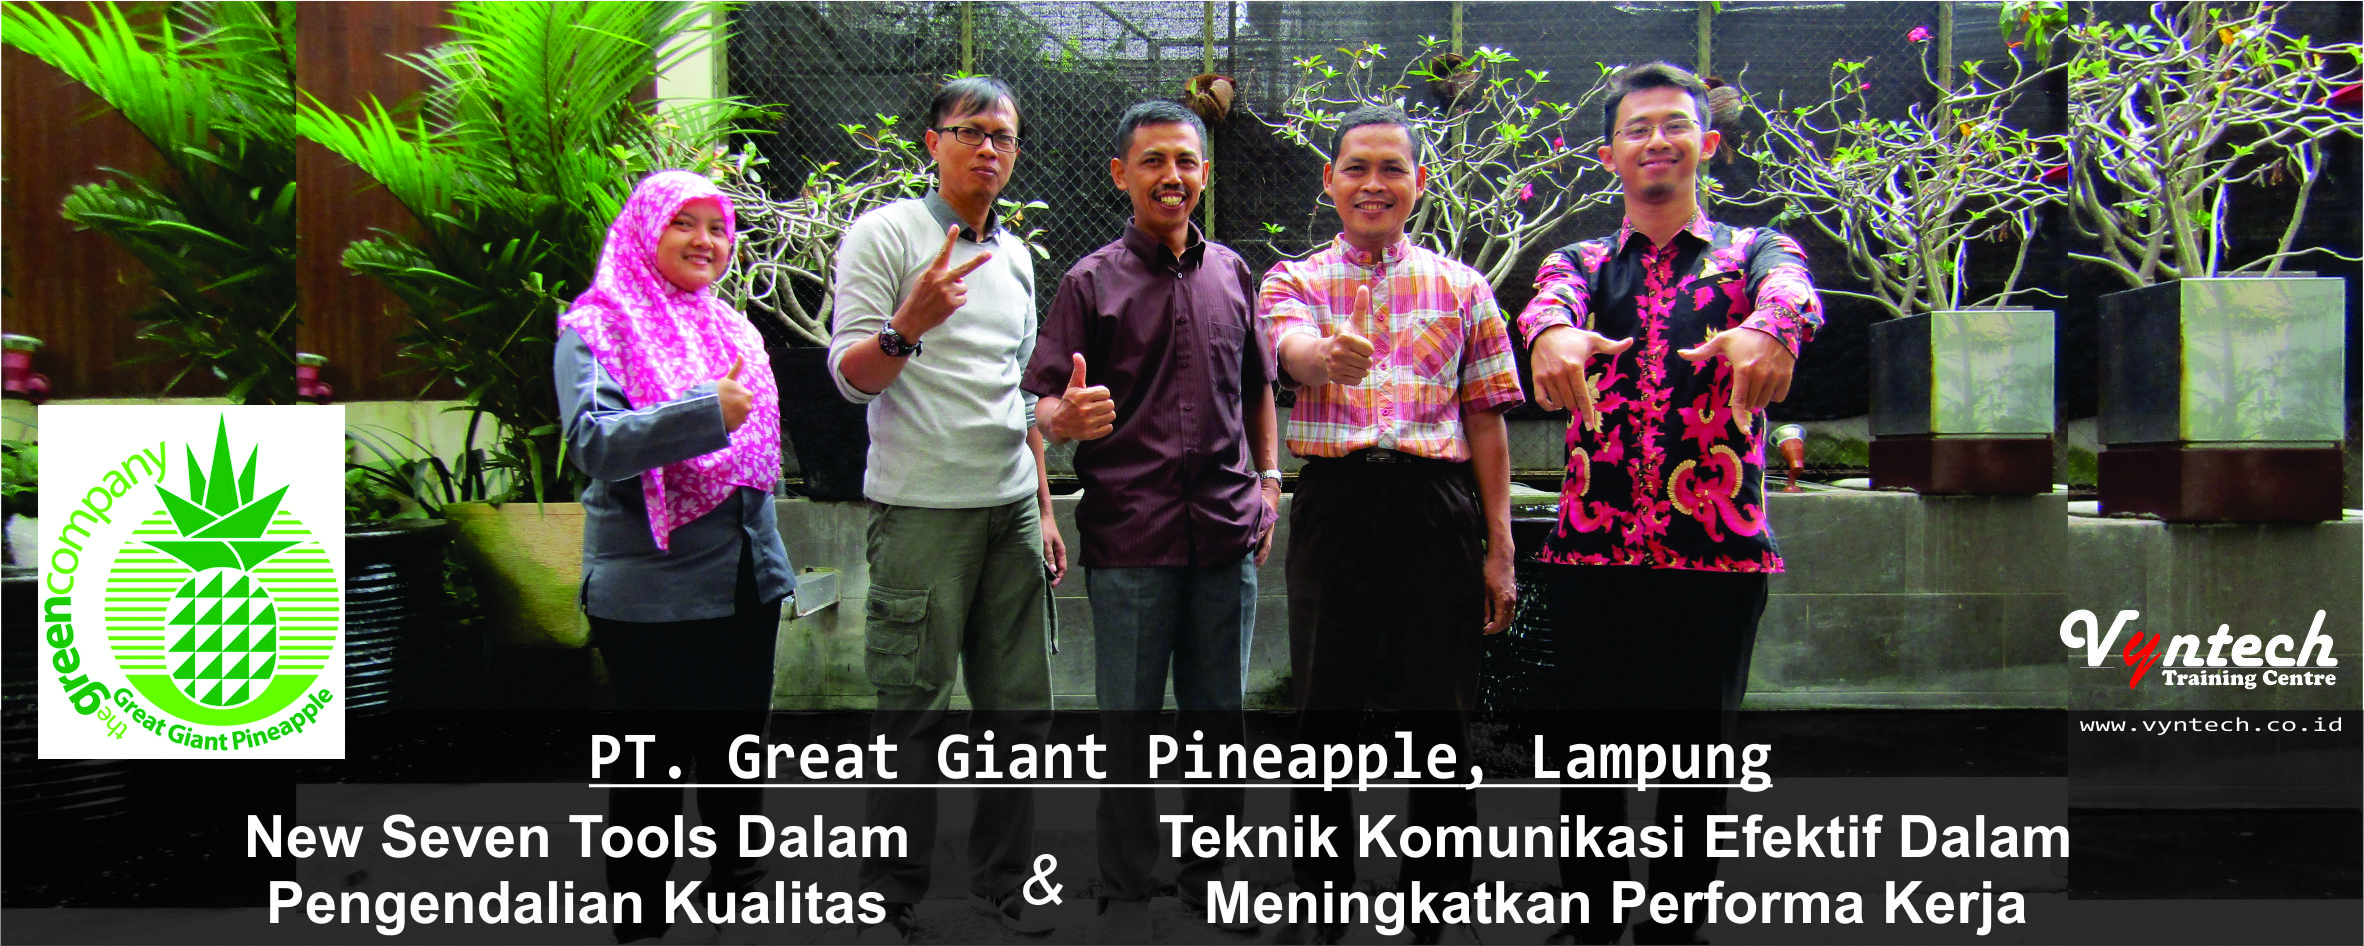 20161220 Training New Seven Tools Dalam Pengendalian Kualitas QC - Teknik Komunikasi Efektif Dalam Meningkatkan Performa Kerja - PT. Great Giant Pineapple GGP, Lampung